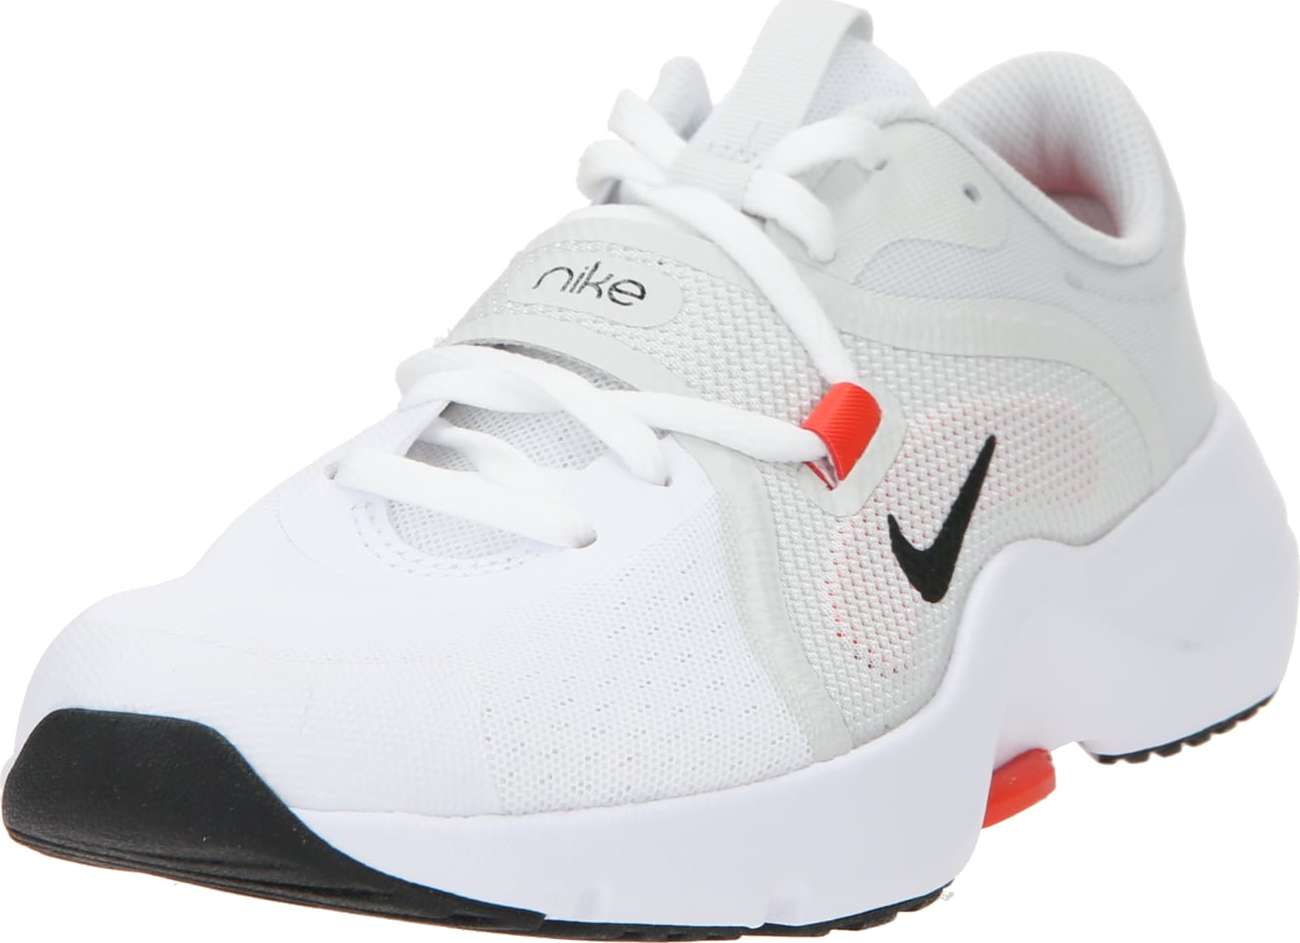 Sportovní boty Nike opálová / tmavě oranžová / černá / bílá